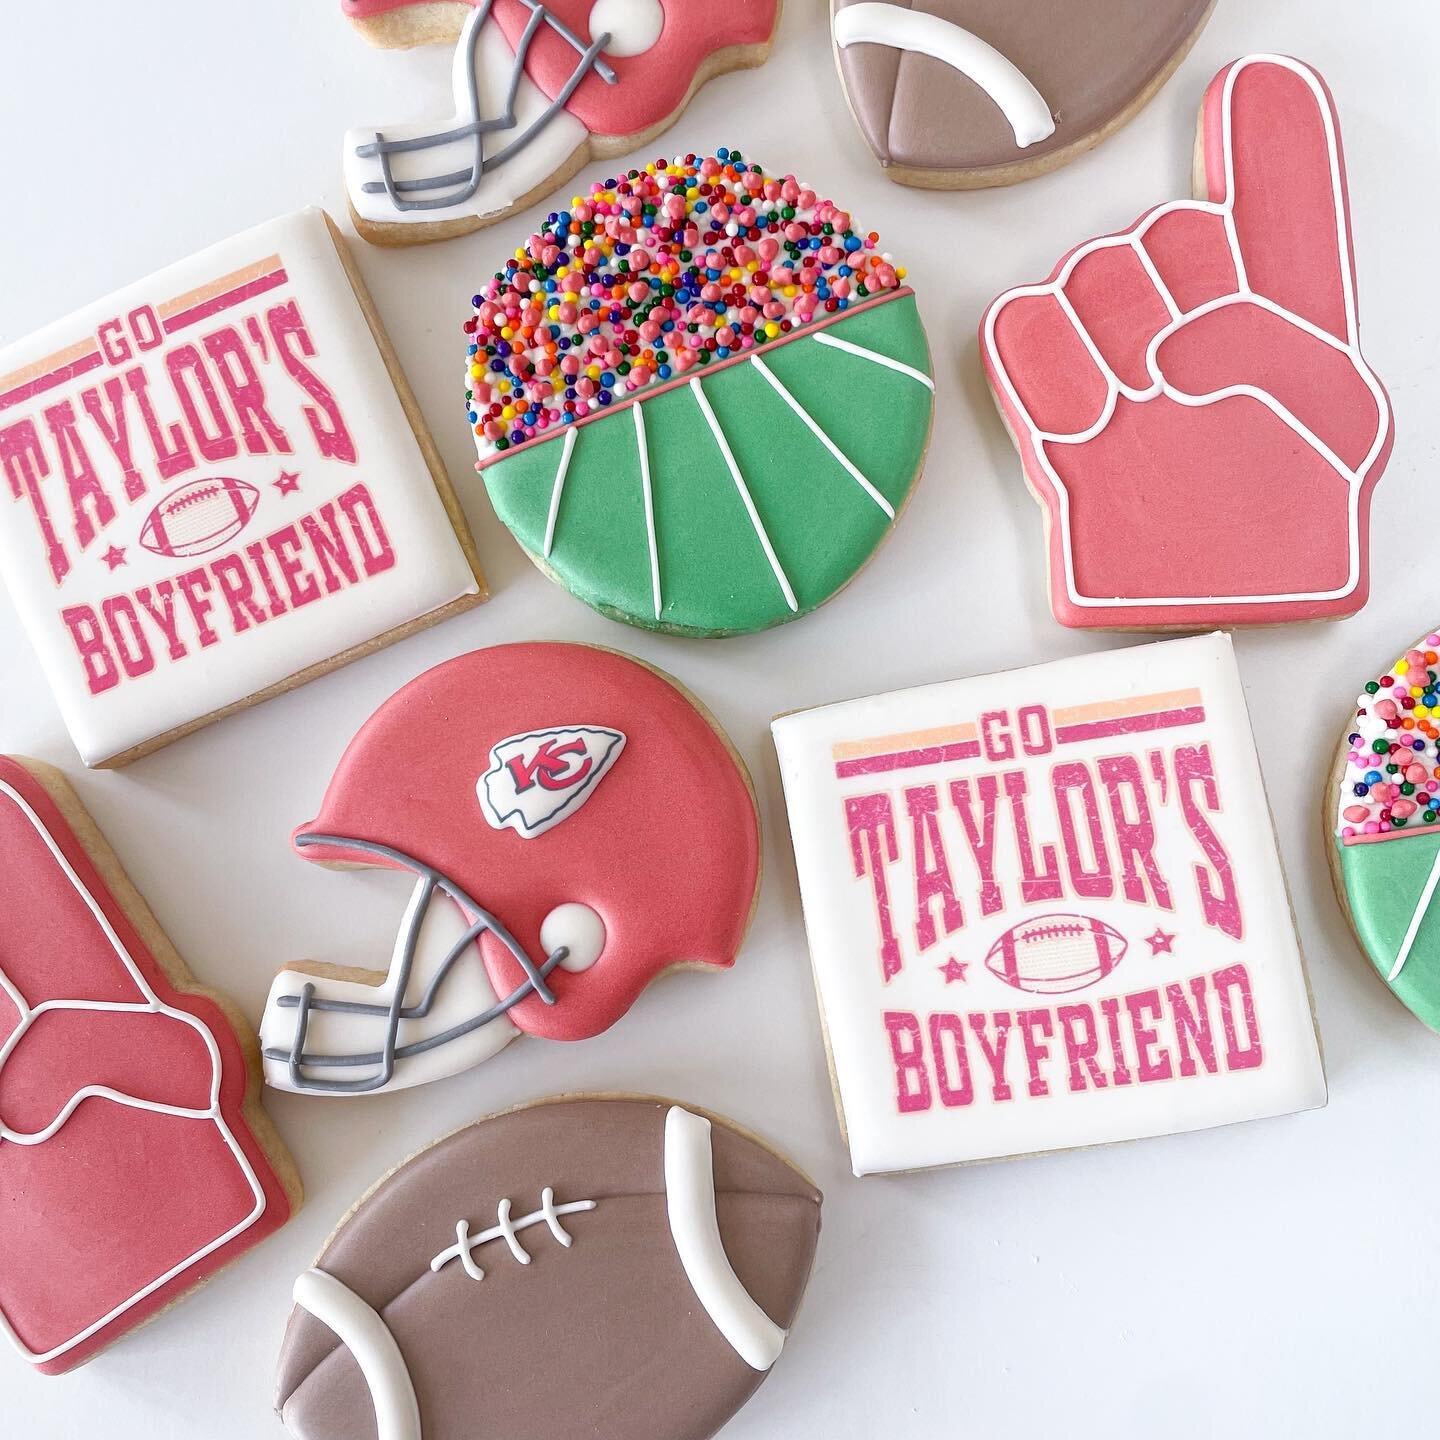 Happy Super Bowl Sunday! 

#superbowlcookies #taylorswiftcookies #footballcookies